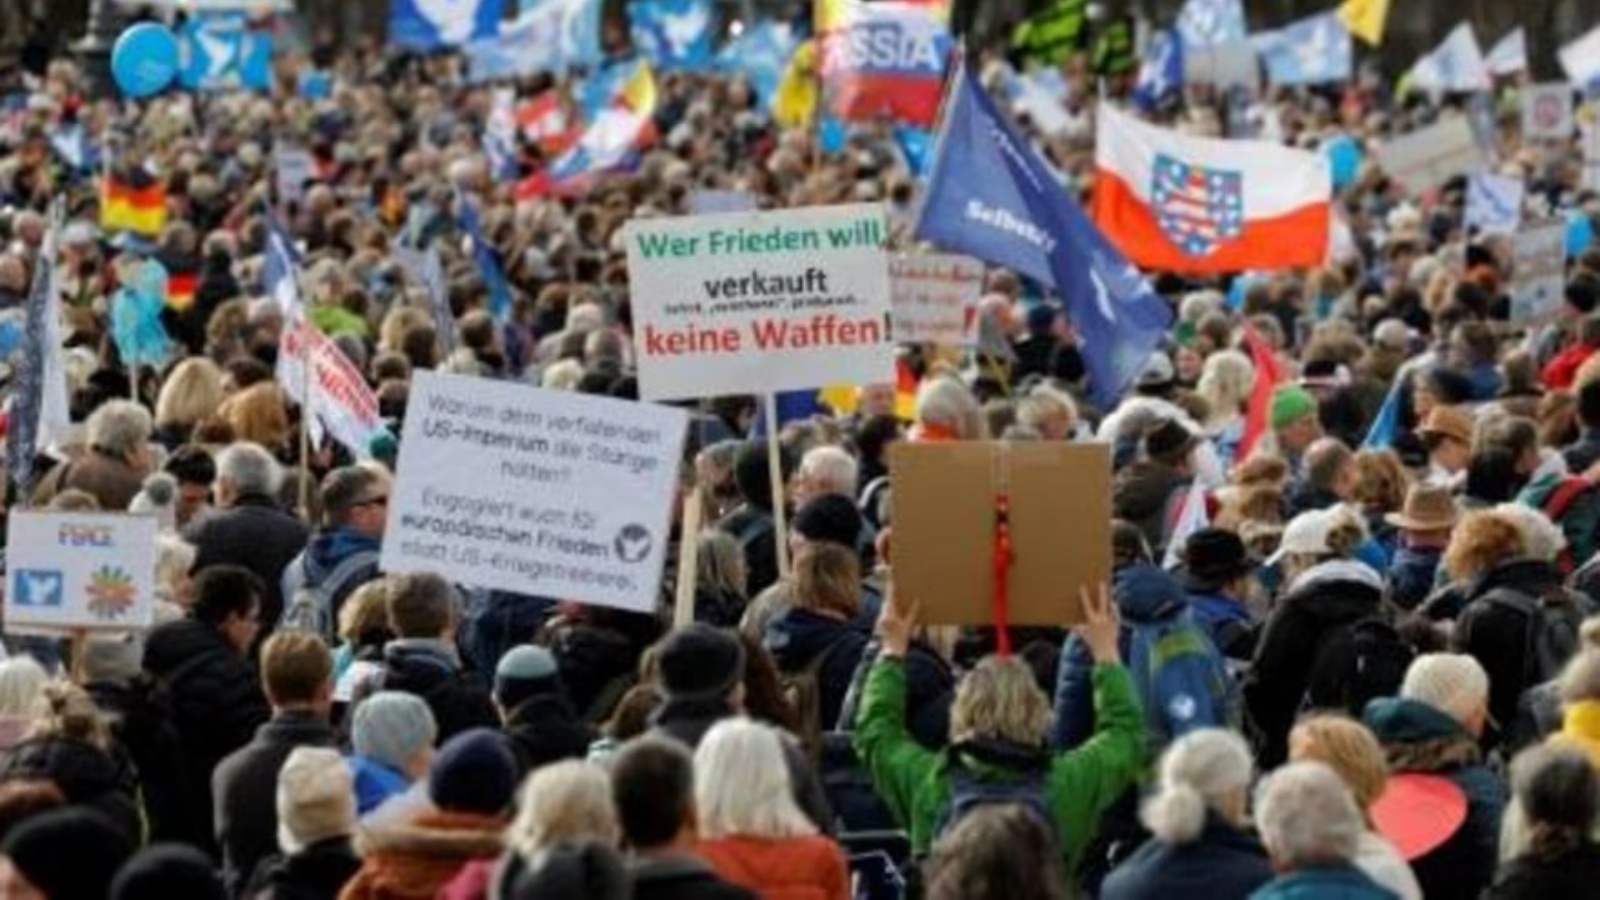  متظاهرون مناهضون للحرب خلال تظاهرة من أجل السلام على هامش مؤتمر ميونخ للأمن في 18 فبراير 2023 